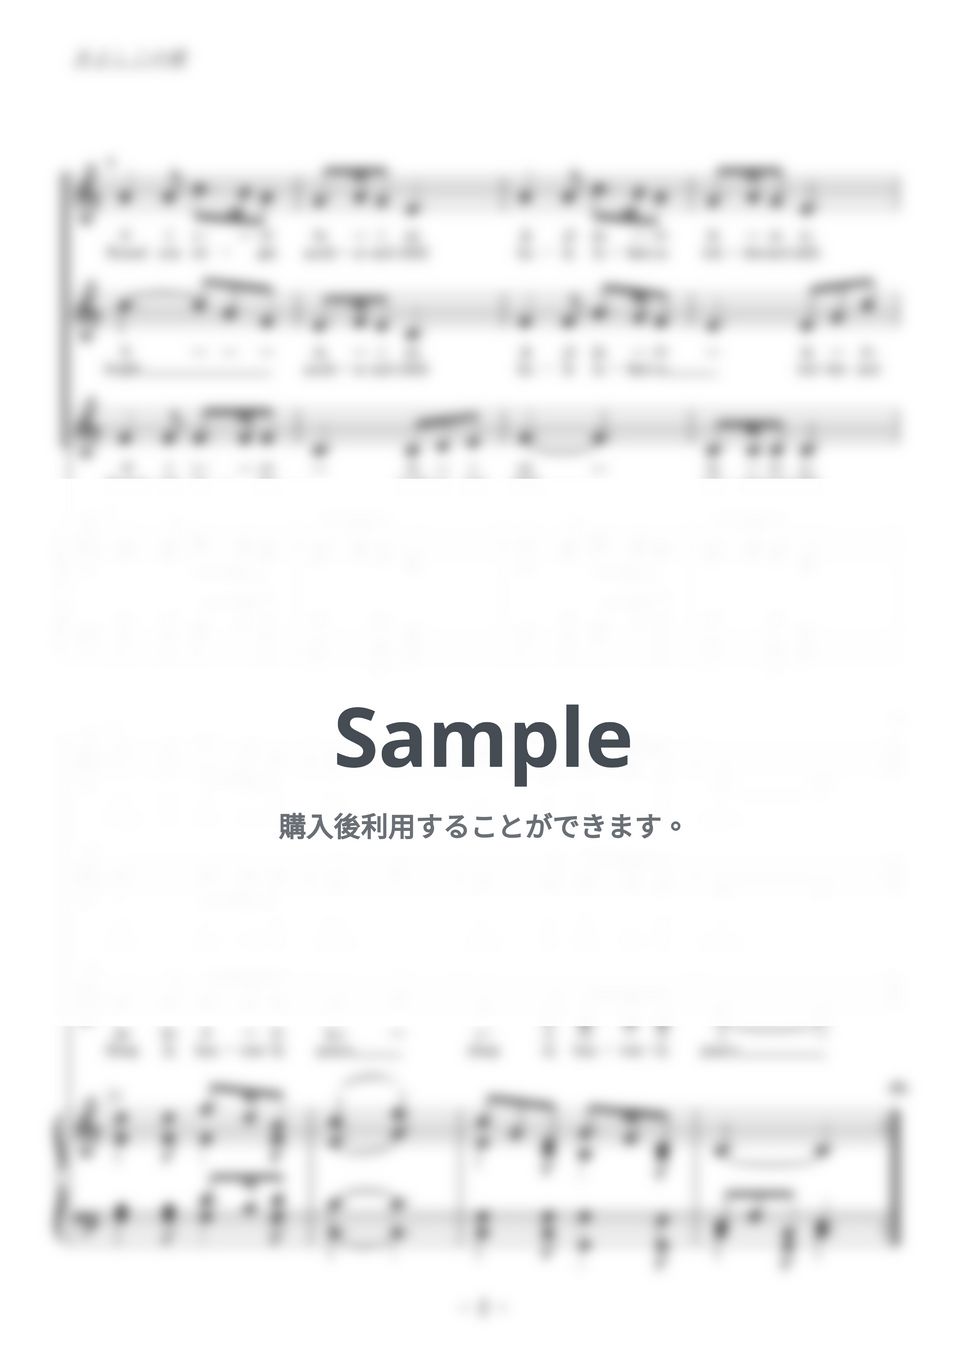 クリスマスソング - 聖夜 (同声三部合唱) by kiminabe